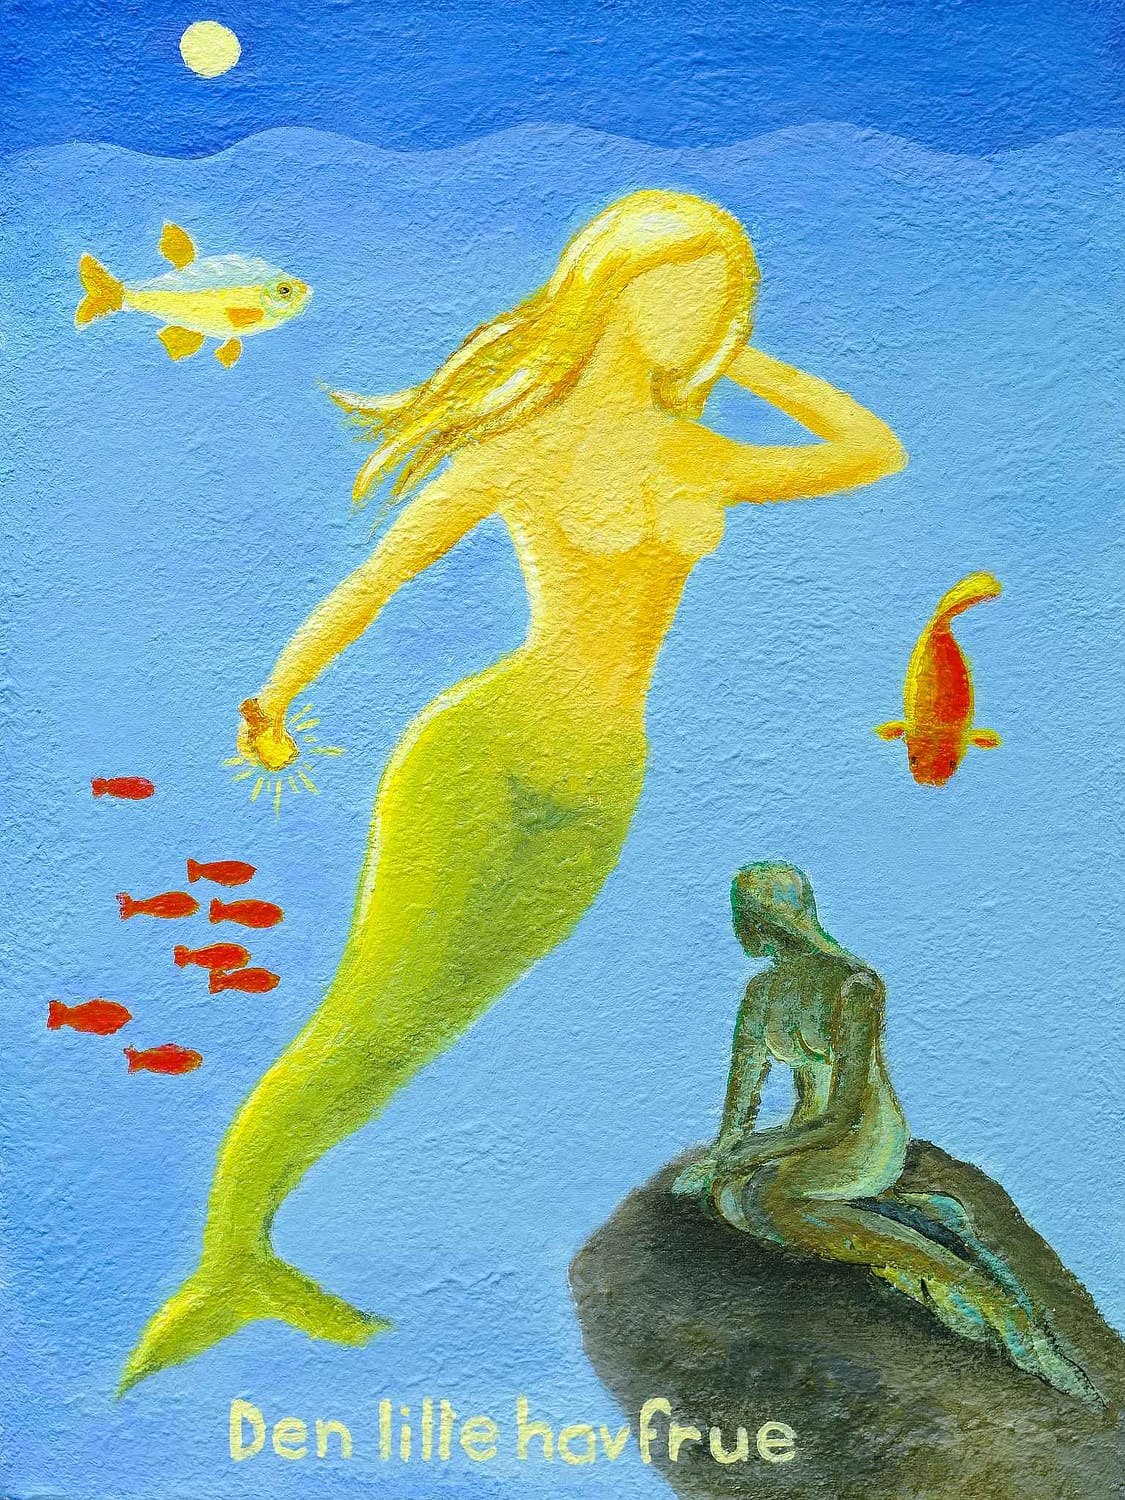 Lene Schmidt-Petersen: "Den lille havfrue" (30x40 cm)